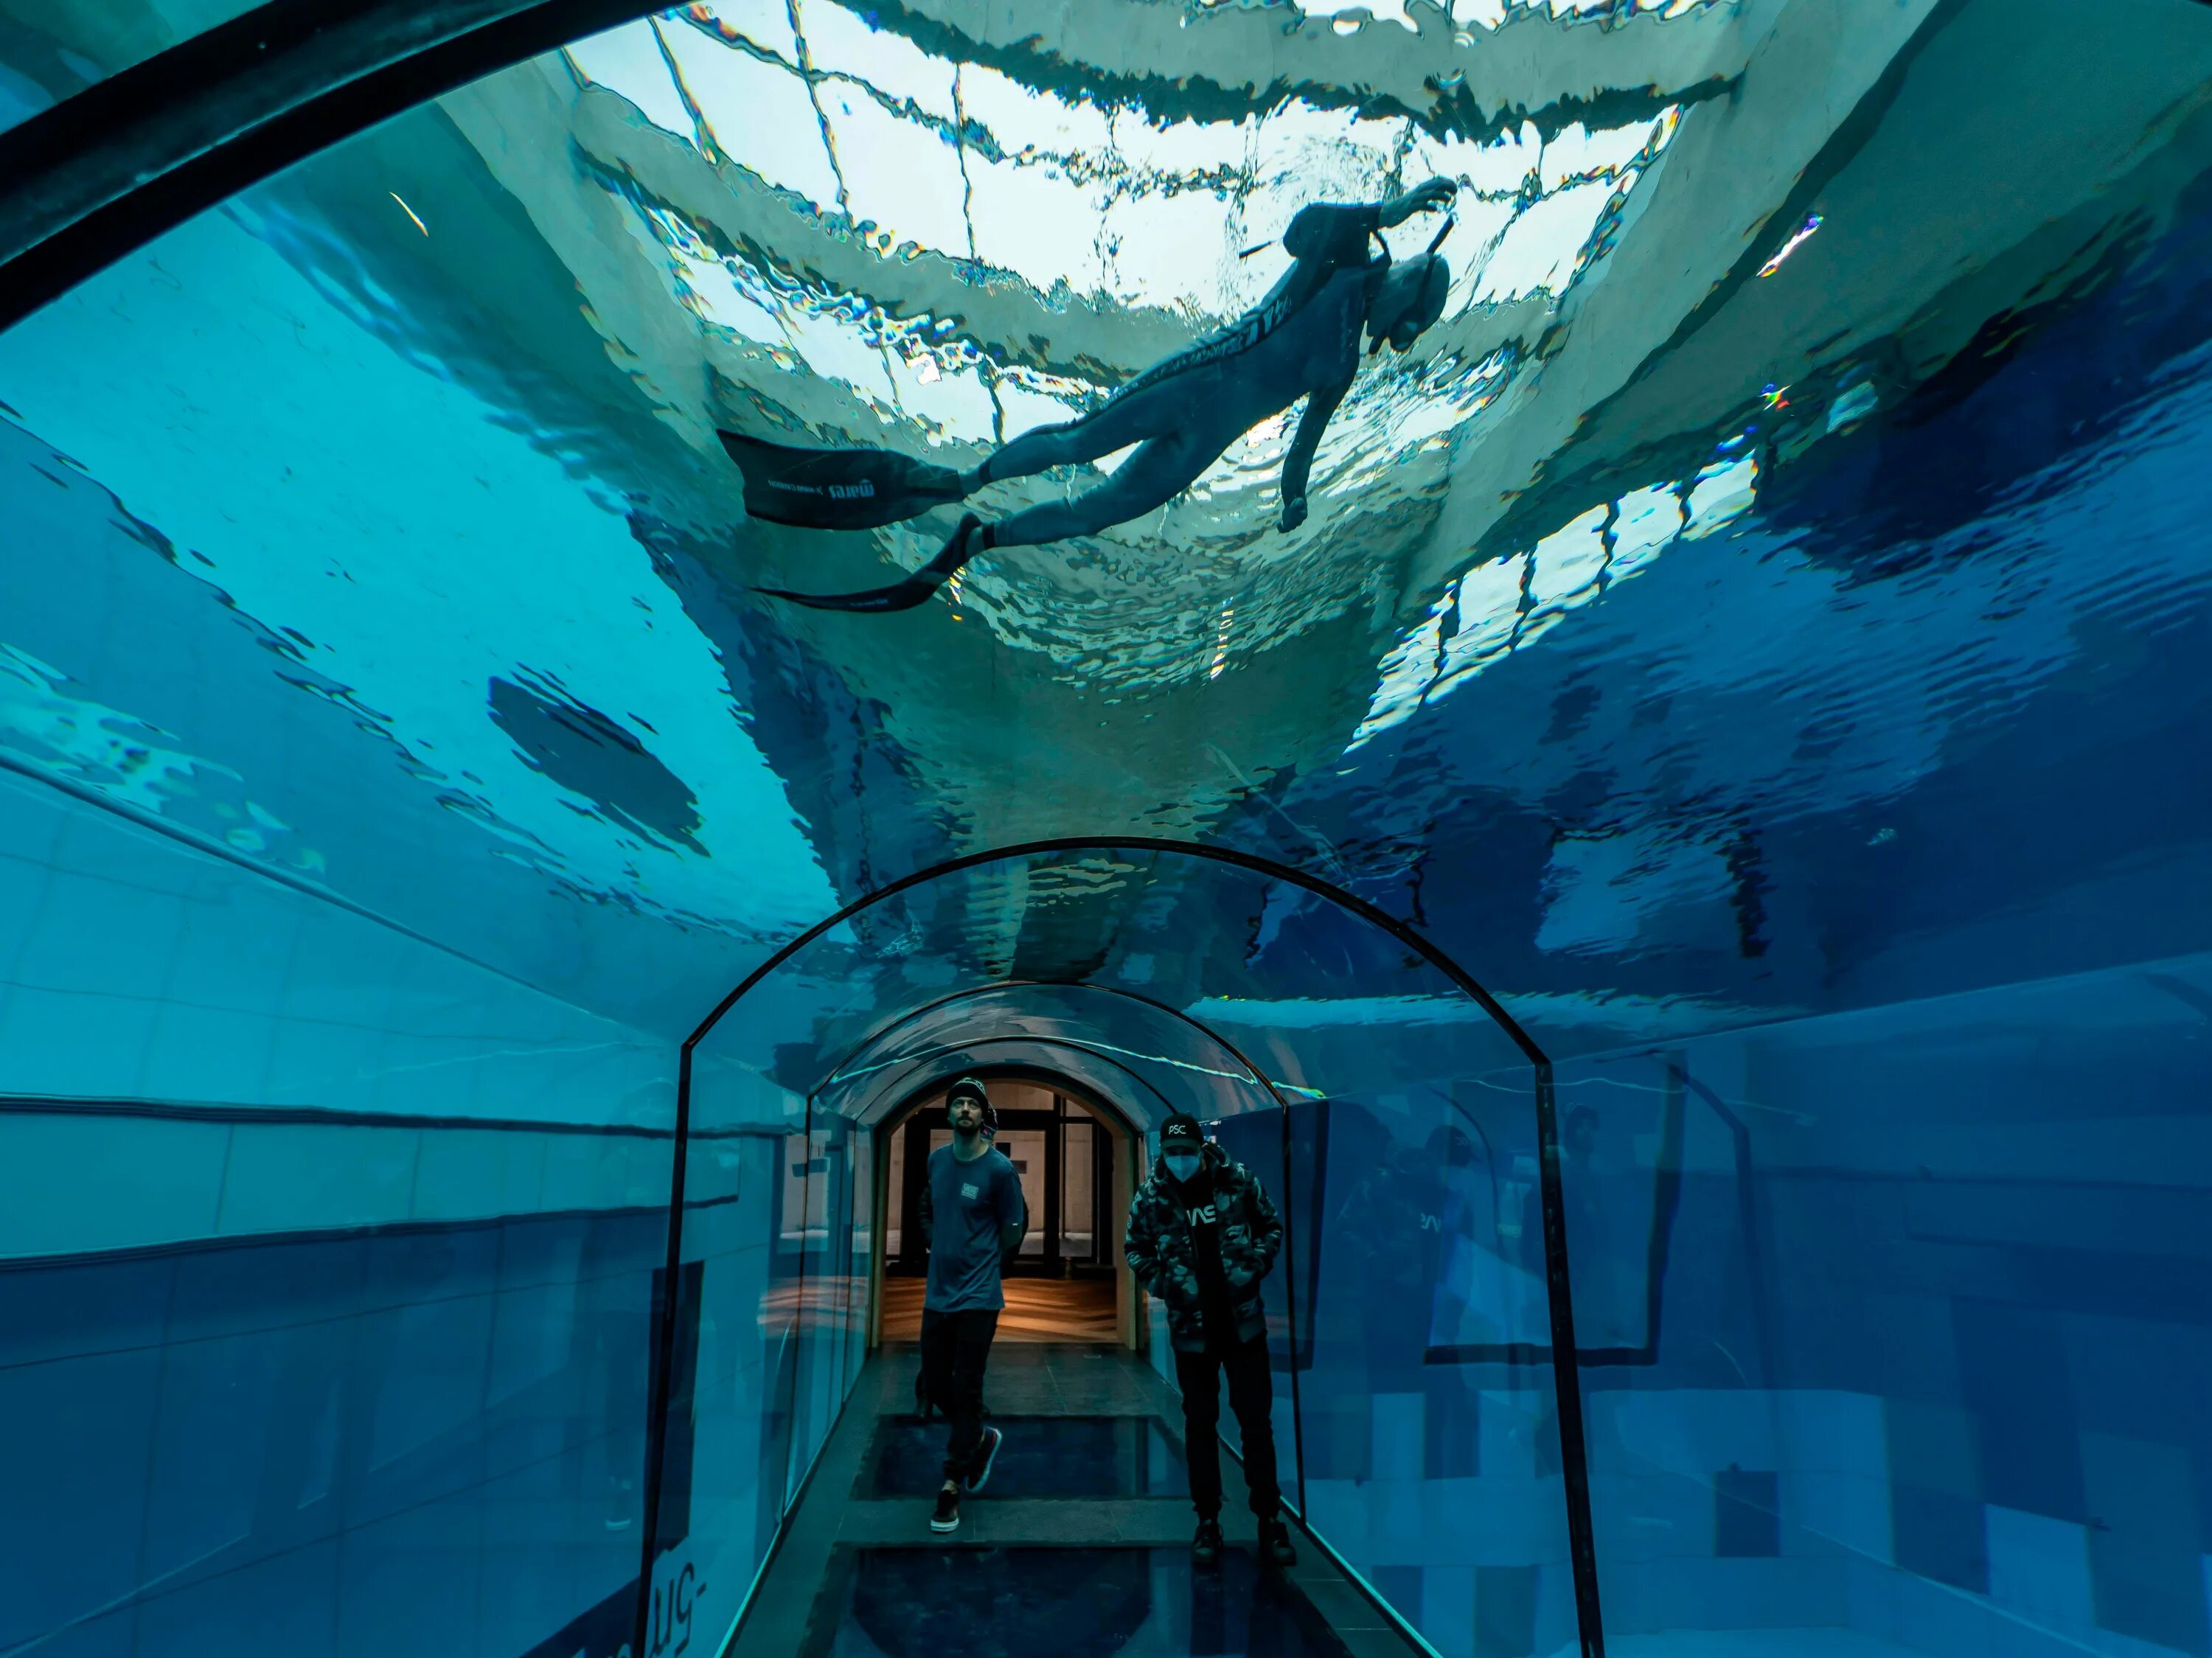 6 метров глубина. Самый глубокий бассейн в мире Немо 33. Бассейн Deep Dive Dubai. Самый глубокий бассейн в мире y-40. Бассейн Немо 33 Бельгия.